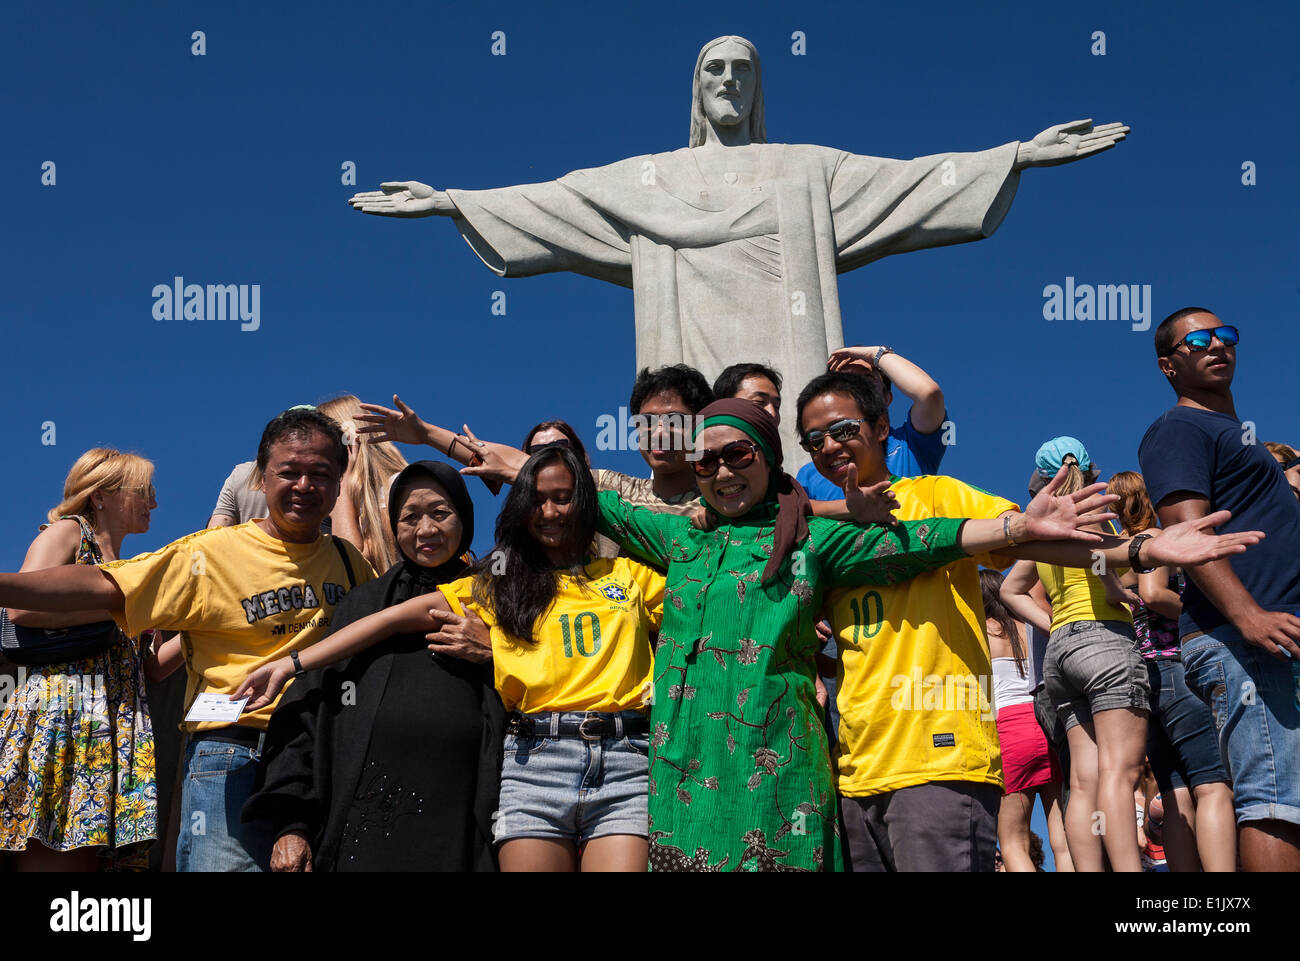 Des touristes posent pour photographier sous la statue du Christ, Corcovado, Rio de Janeiro, Brésil Banque D'Images